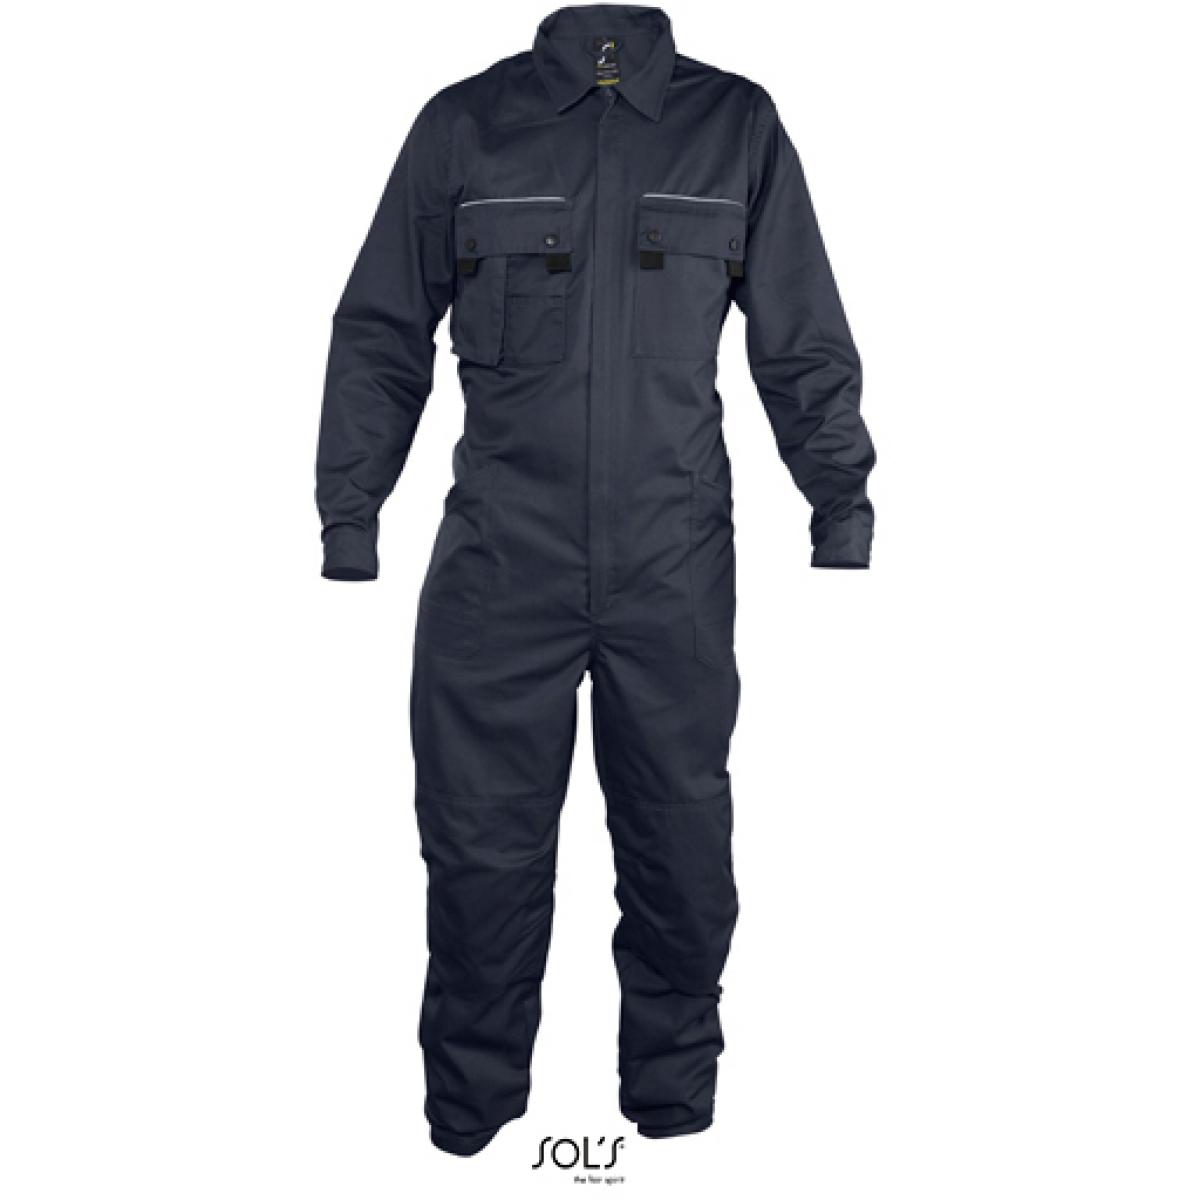 Hersteller: SOLs ProWear Herstellernummer: 80902 Artikelbezeichnung: Herren Workwear Overall Solstice Pro Farbe: Navy